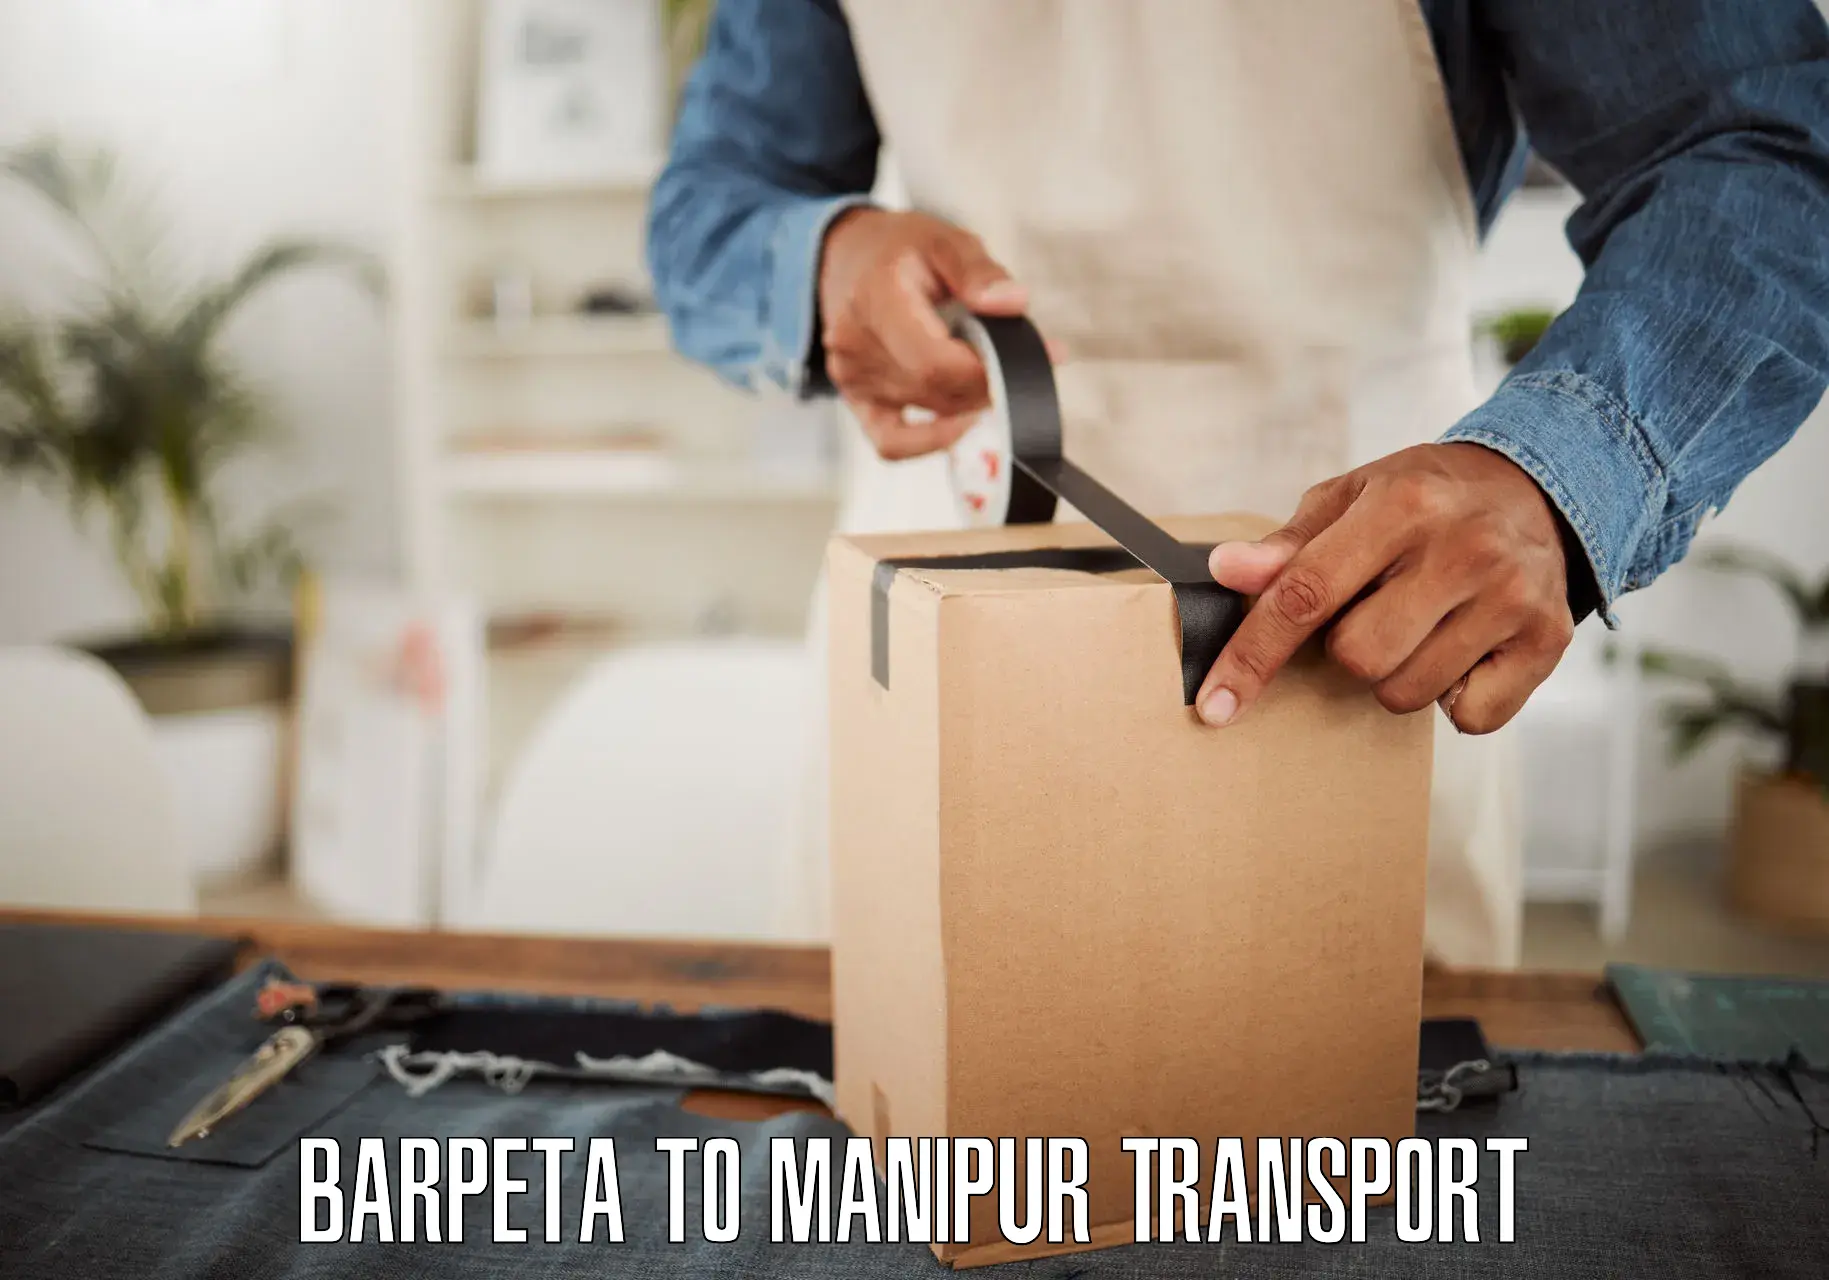 All India transport service Barpeta to Senapati